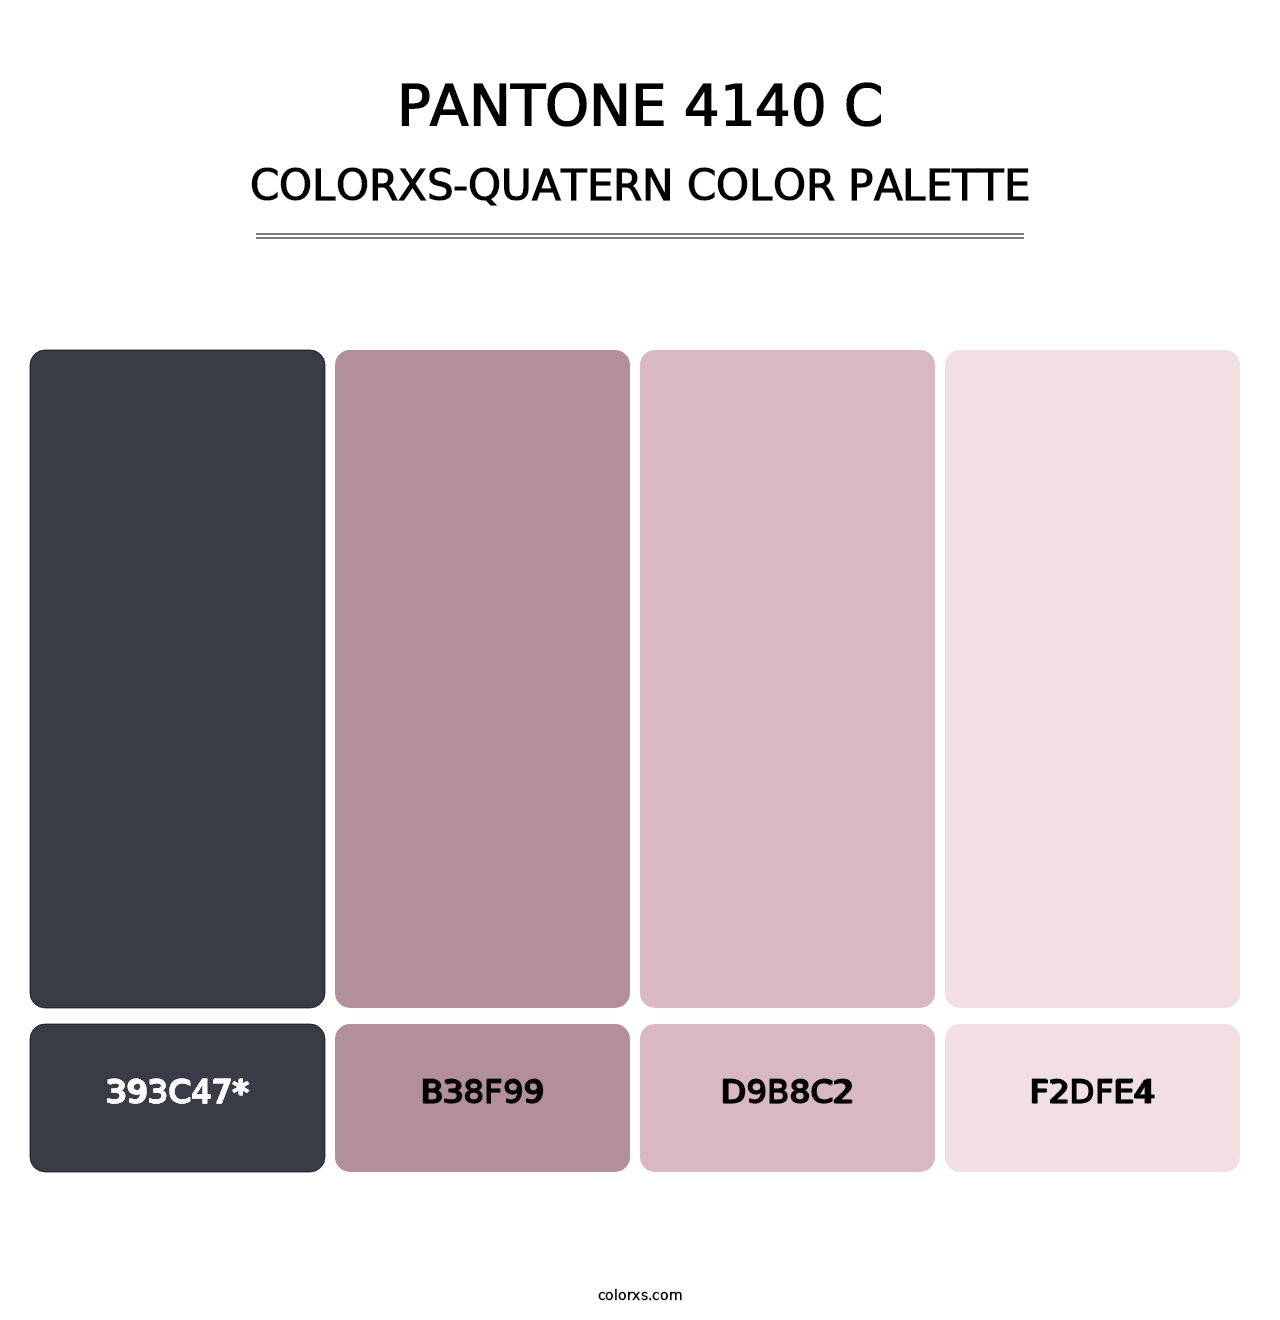 PANTONE 4140 C - Colorxs Quatern Palette